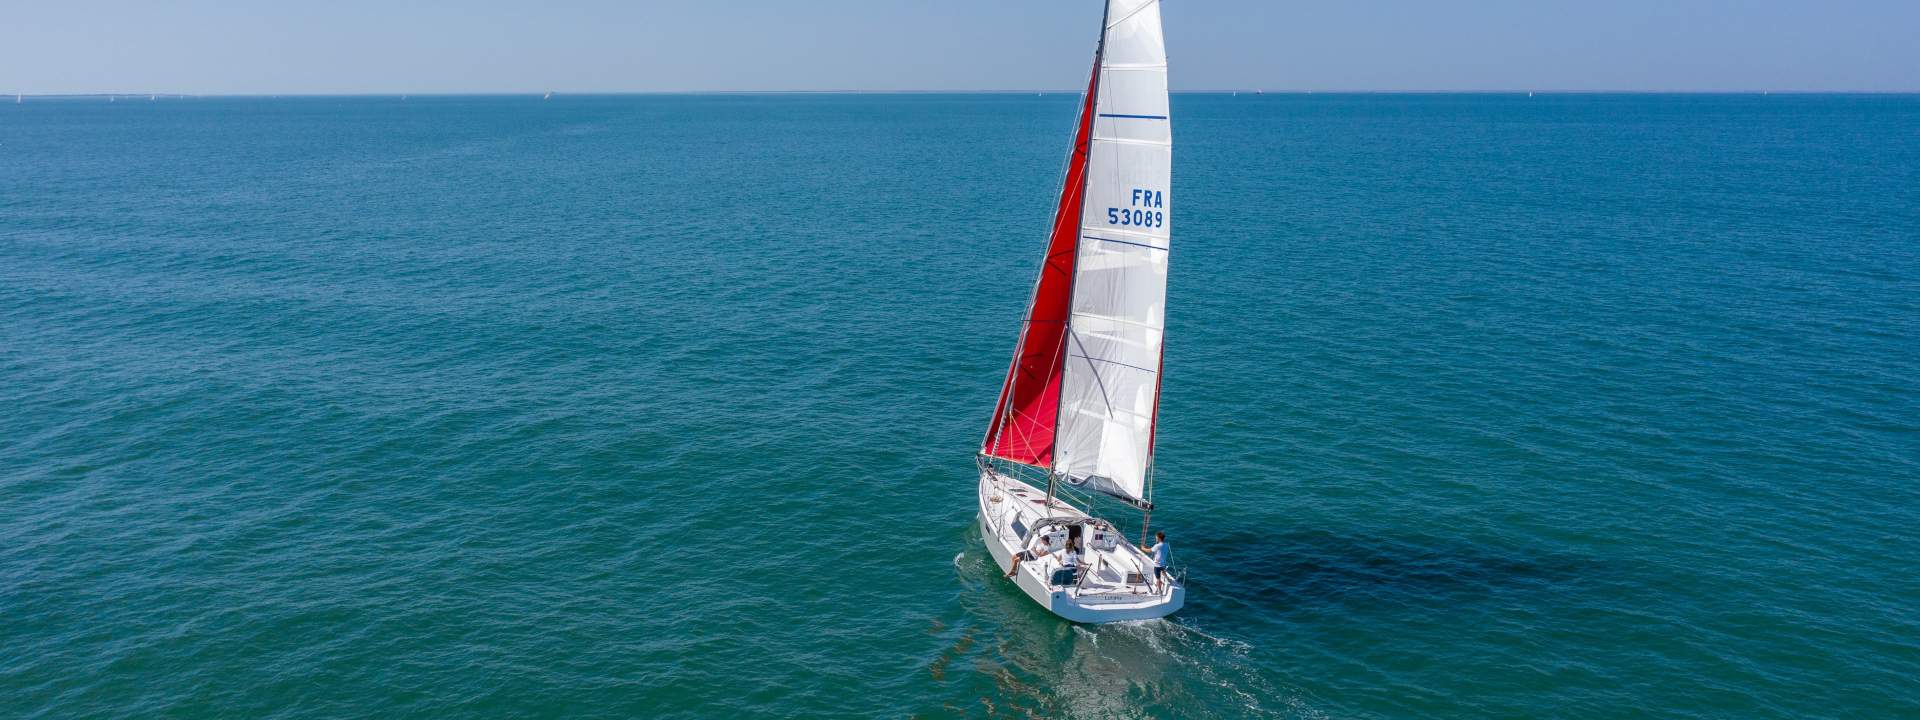 Navega por el océano Atlántico en velero hasta Martinica